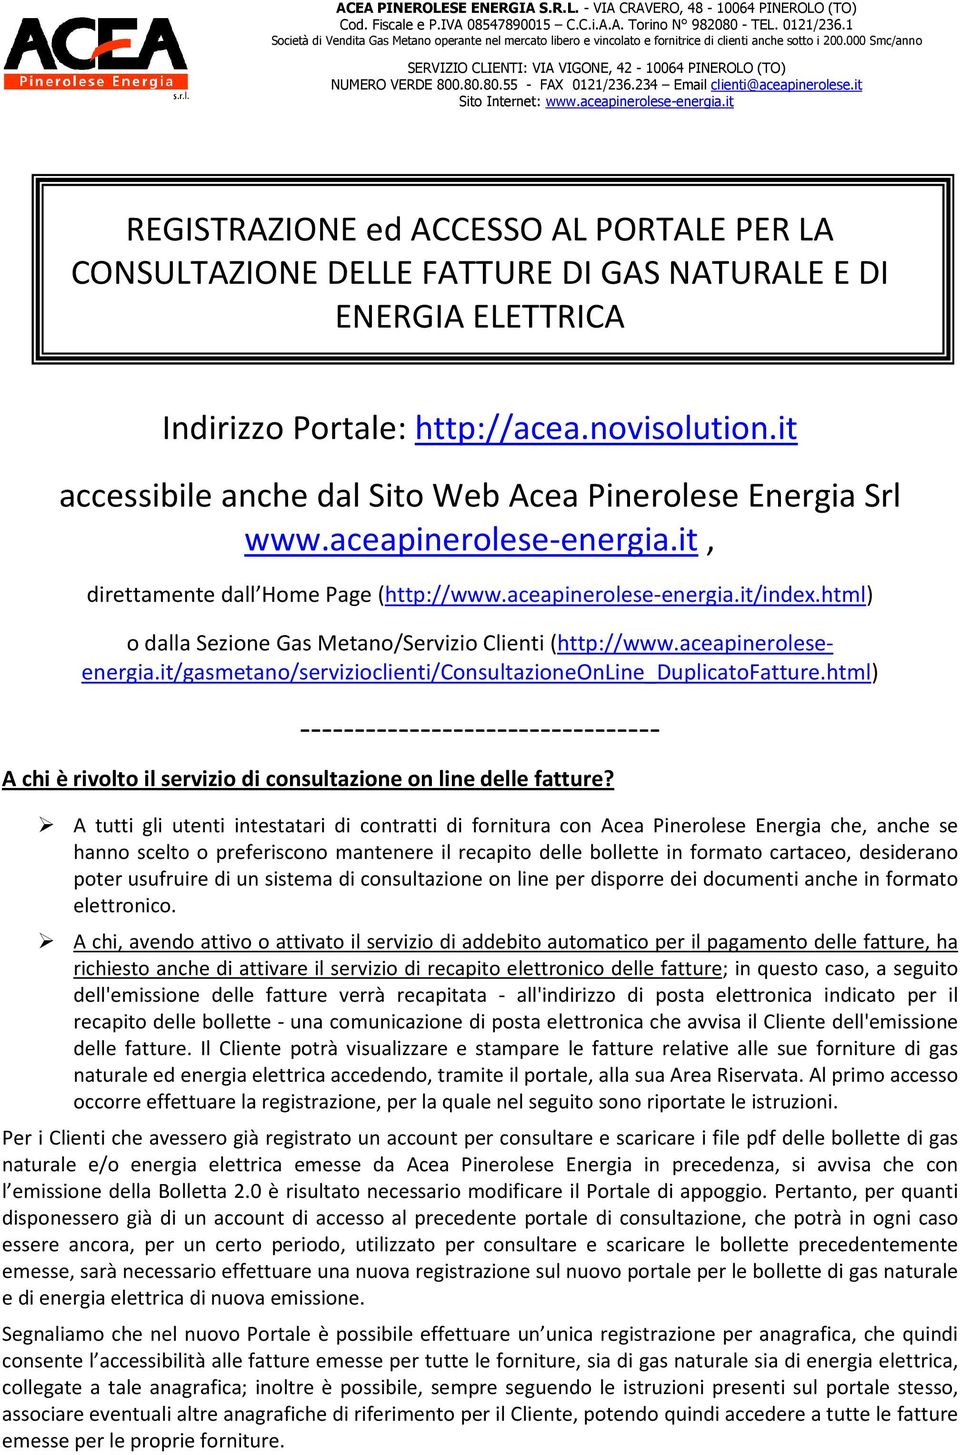 html) o dalla Sezione Gas Metano/Servizio Clienti (http://www.aceapineroleseenergia.it/gasmetano/servizioclienti/consultazioneonline_duplicatofatture.